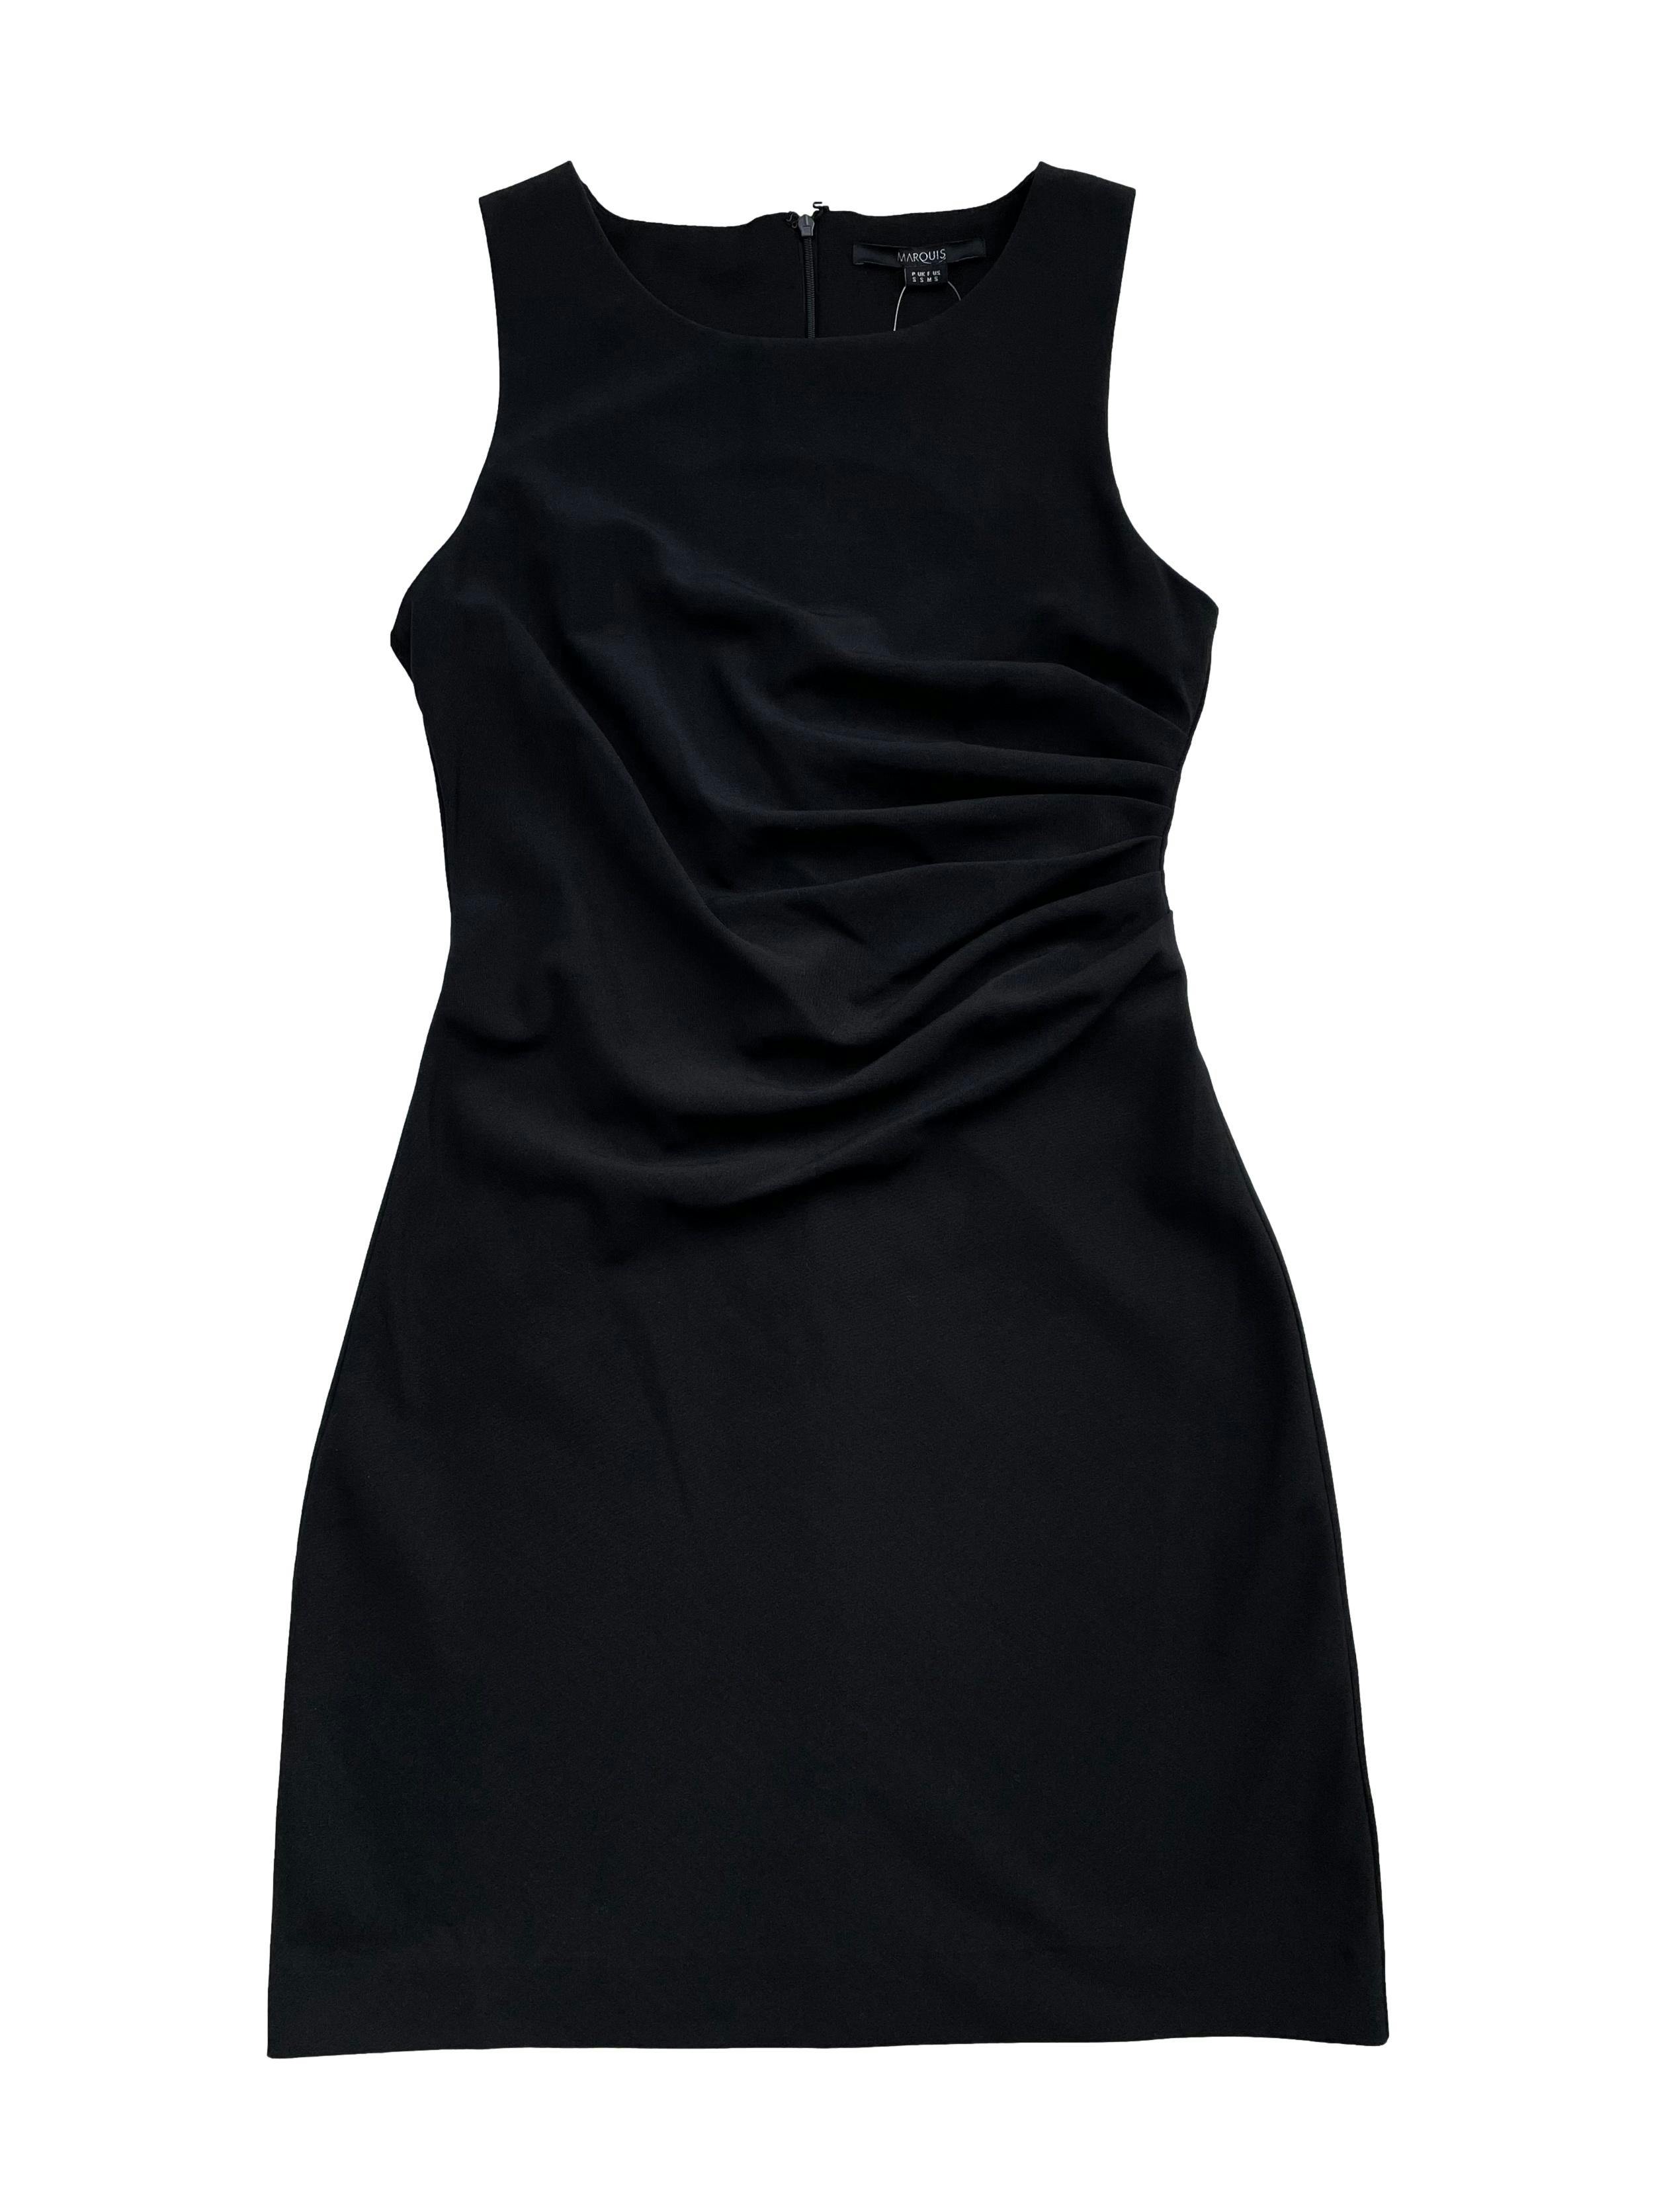 Vestido Marquis negro, tela tipo sastre, drapeado lateral y cierre en la espalda. Busto 90cm Largo 90cm